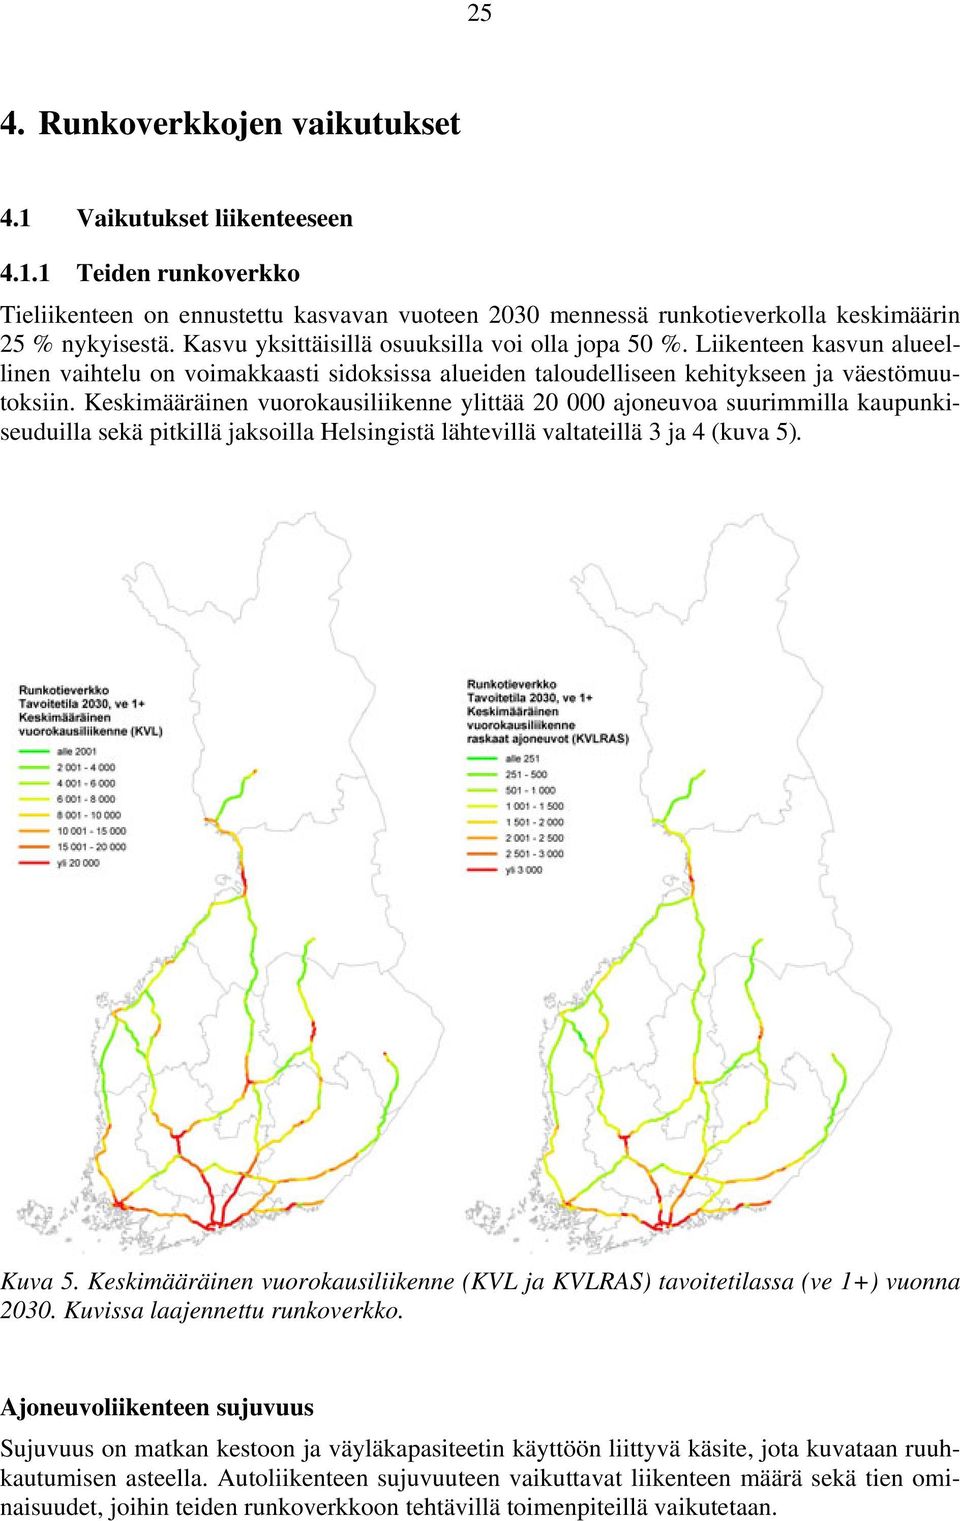 Keskimääräinen vuorokausiliikenne ylittää 20 000 ajoneuvoa suurimmilla kaupunkiseuduilla sekä pitkillä jaksoilla Helsingistä lähtevillä valtateillä 3 ja 4 (kuva 5). Kuva 5.